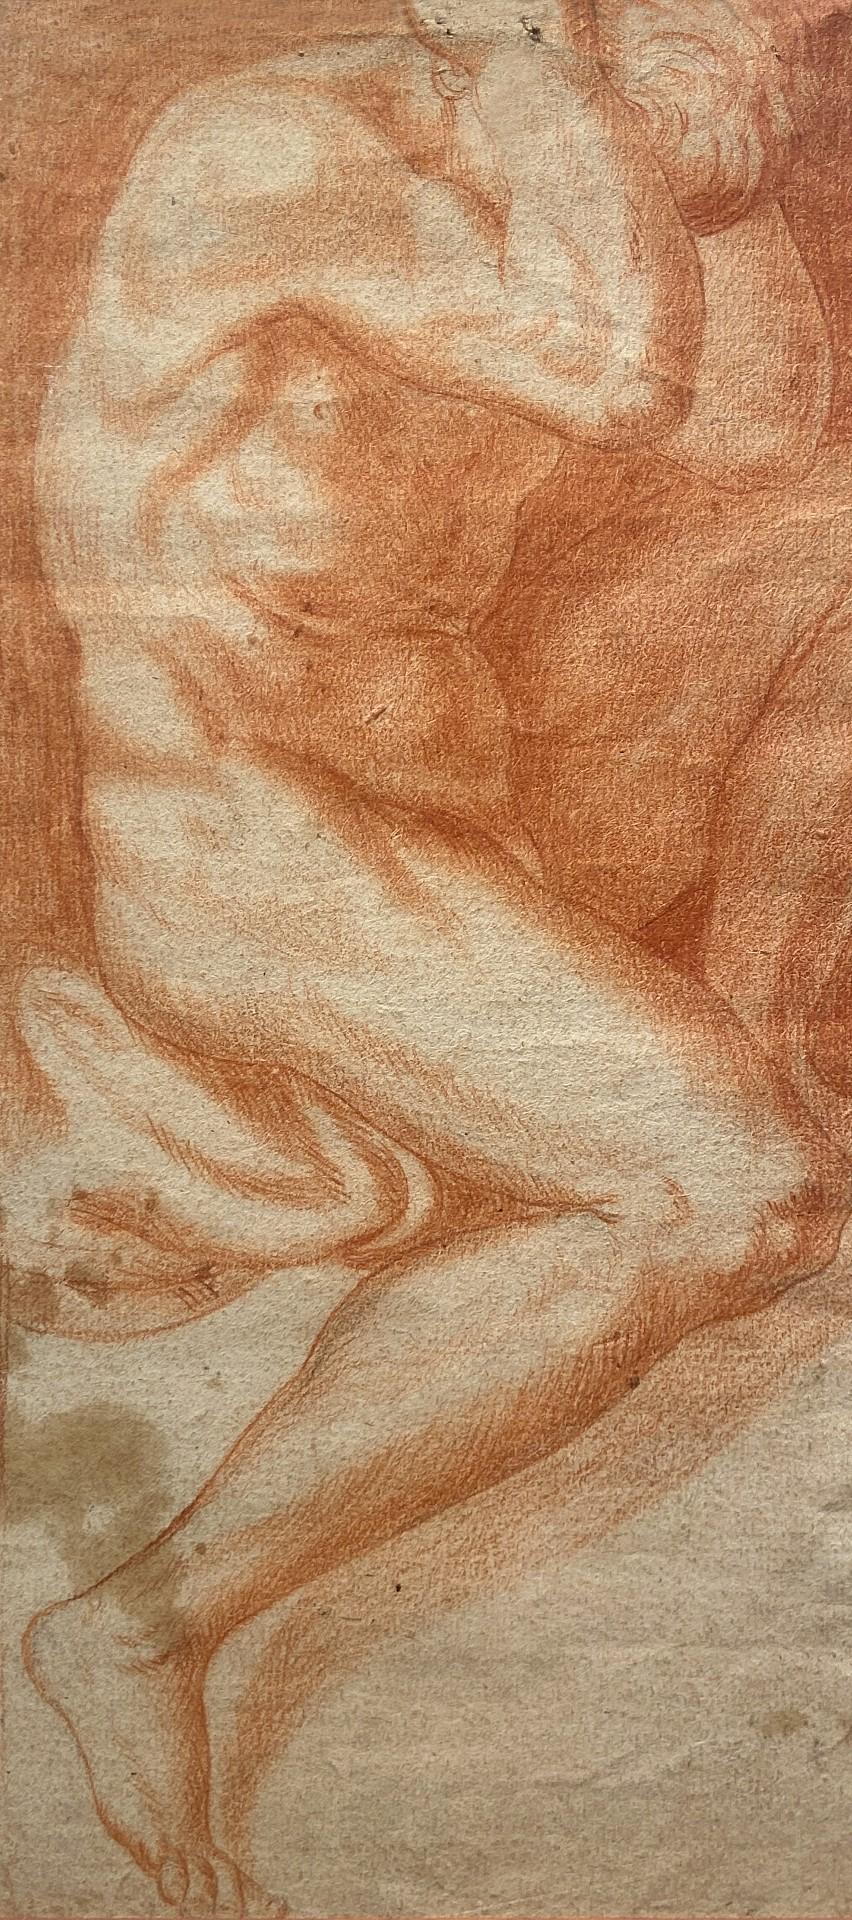 Nude Annibale Carracci - The Captive, Étude d'un homme nu, Étude à la craie rouge, Galerie Carracci